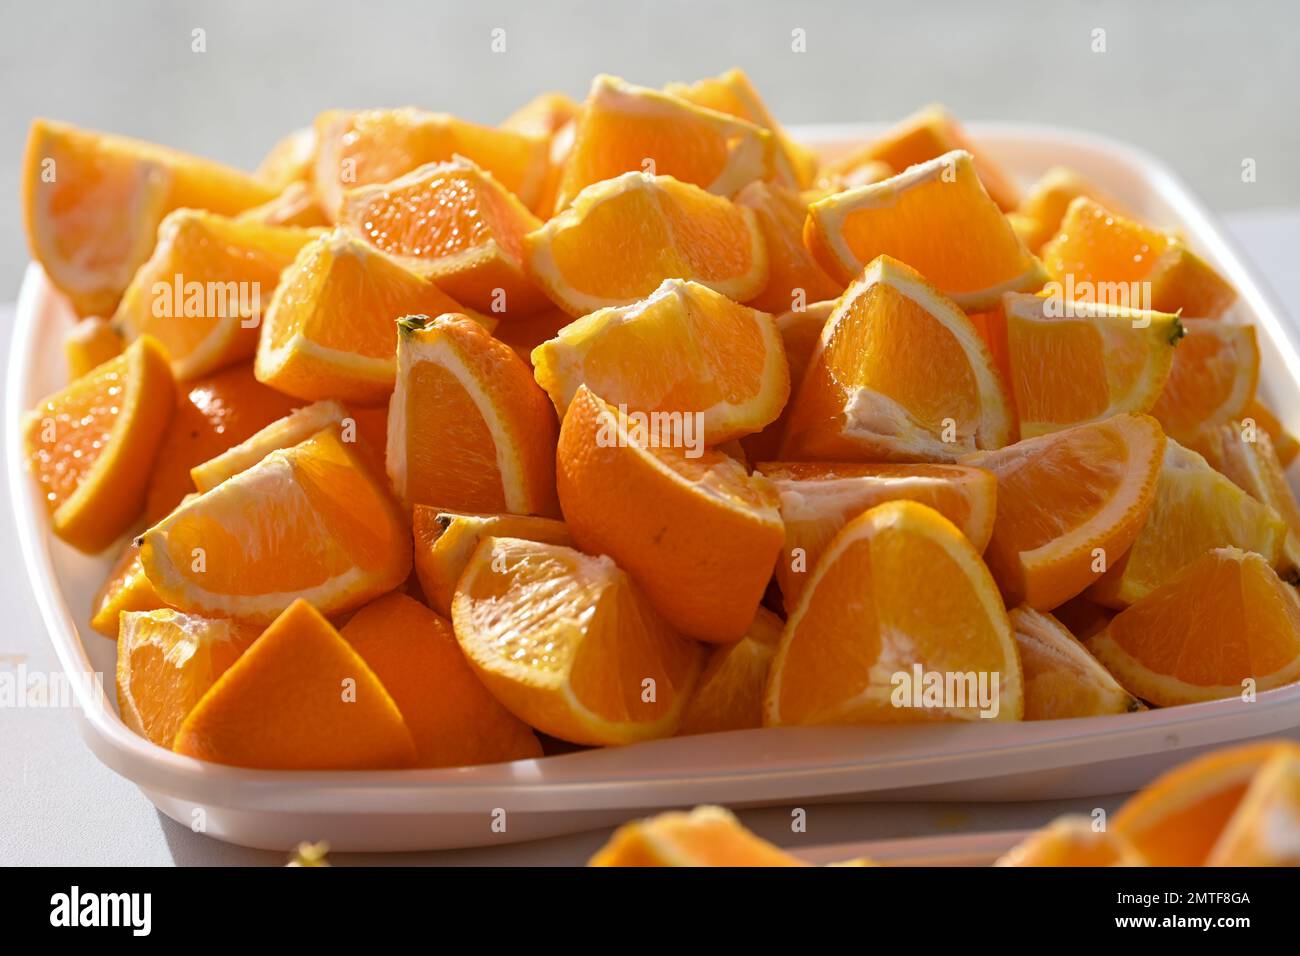 Orange Segmente reich an Vitamin C. urheberrechtlich geschütztes Foto von Paul Slater Images Ltd - Tel. 07512838472. Stockfoto